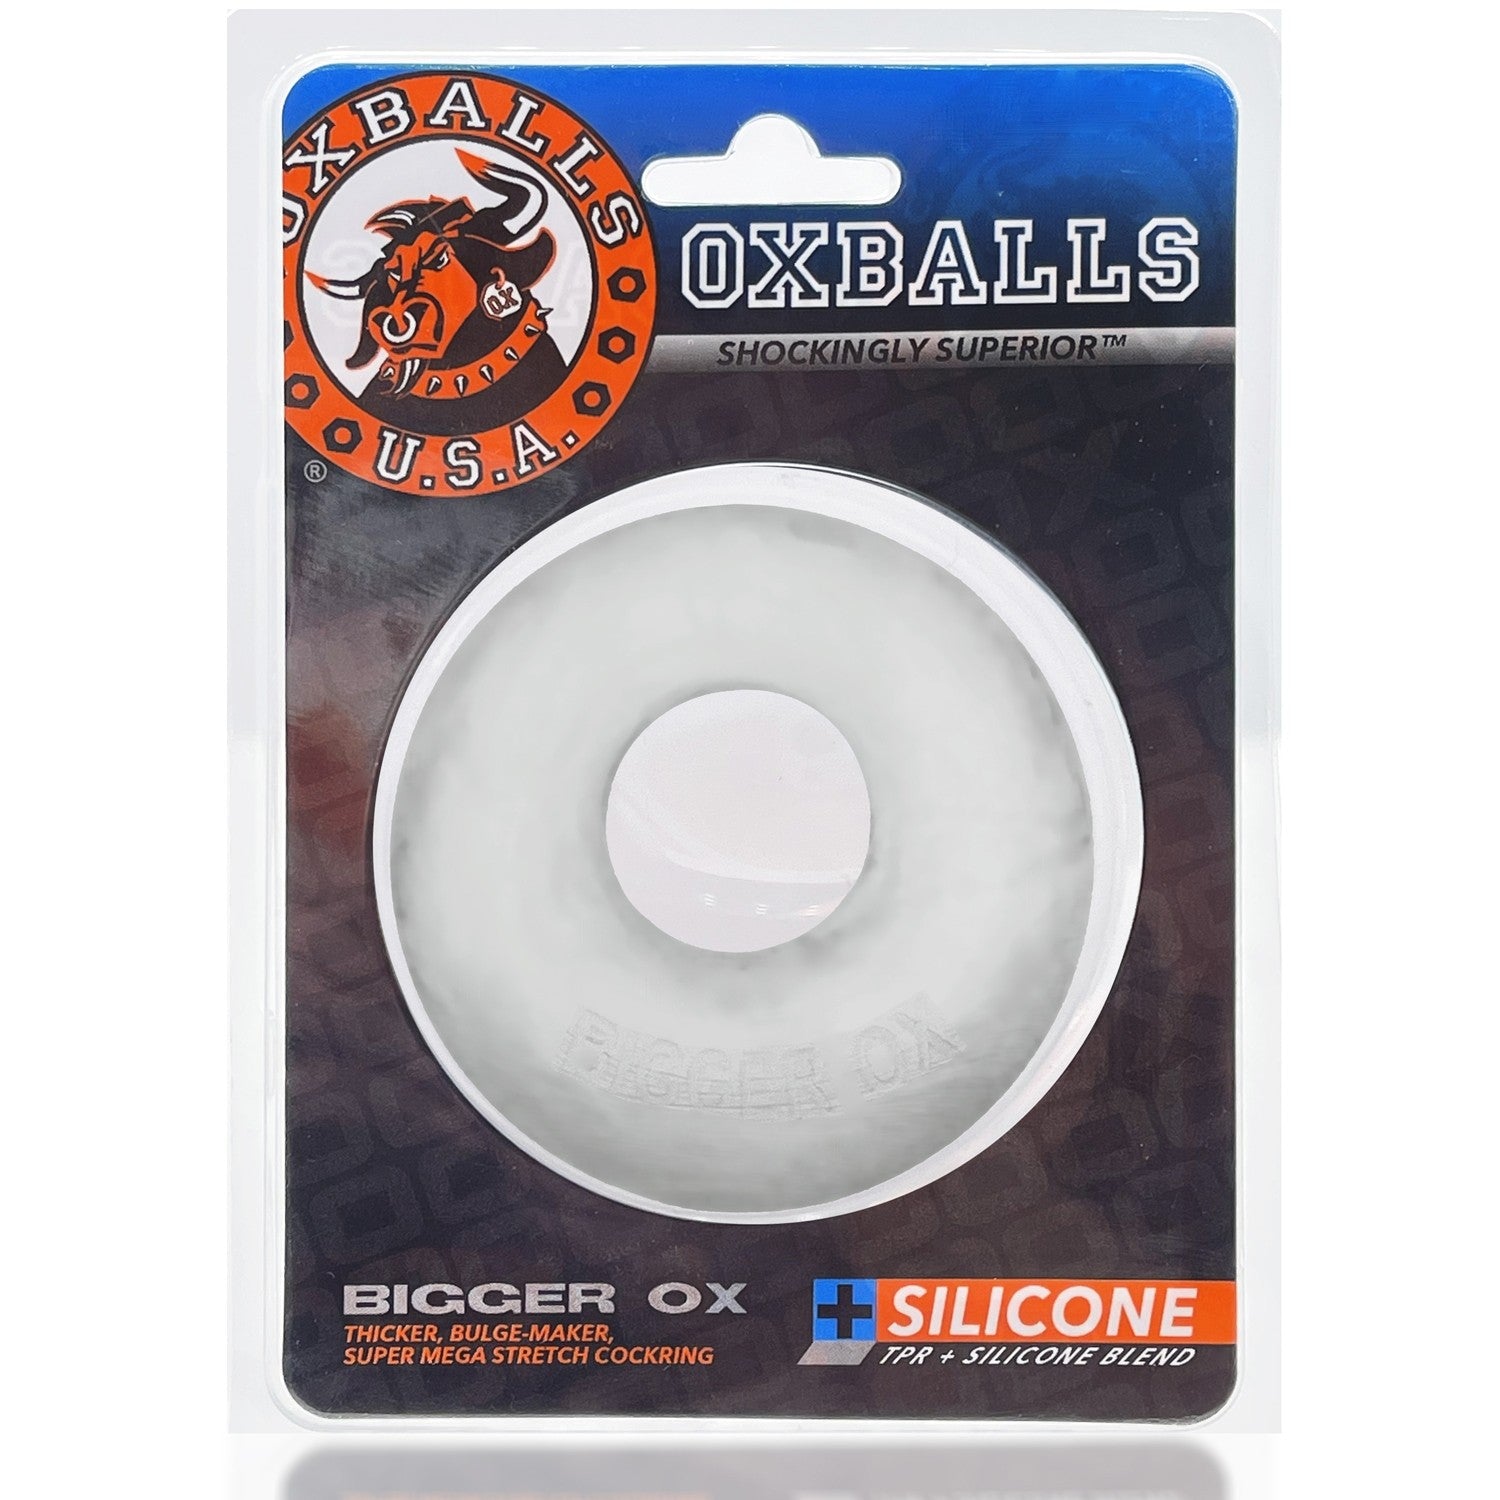 Oxballs Bigger Ox Cock Ring - XOXTOYS